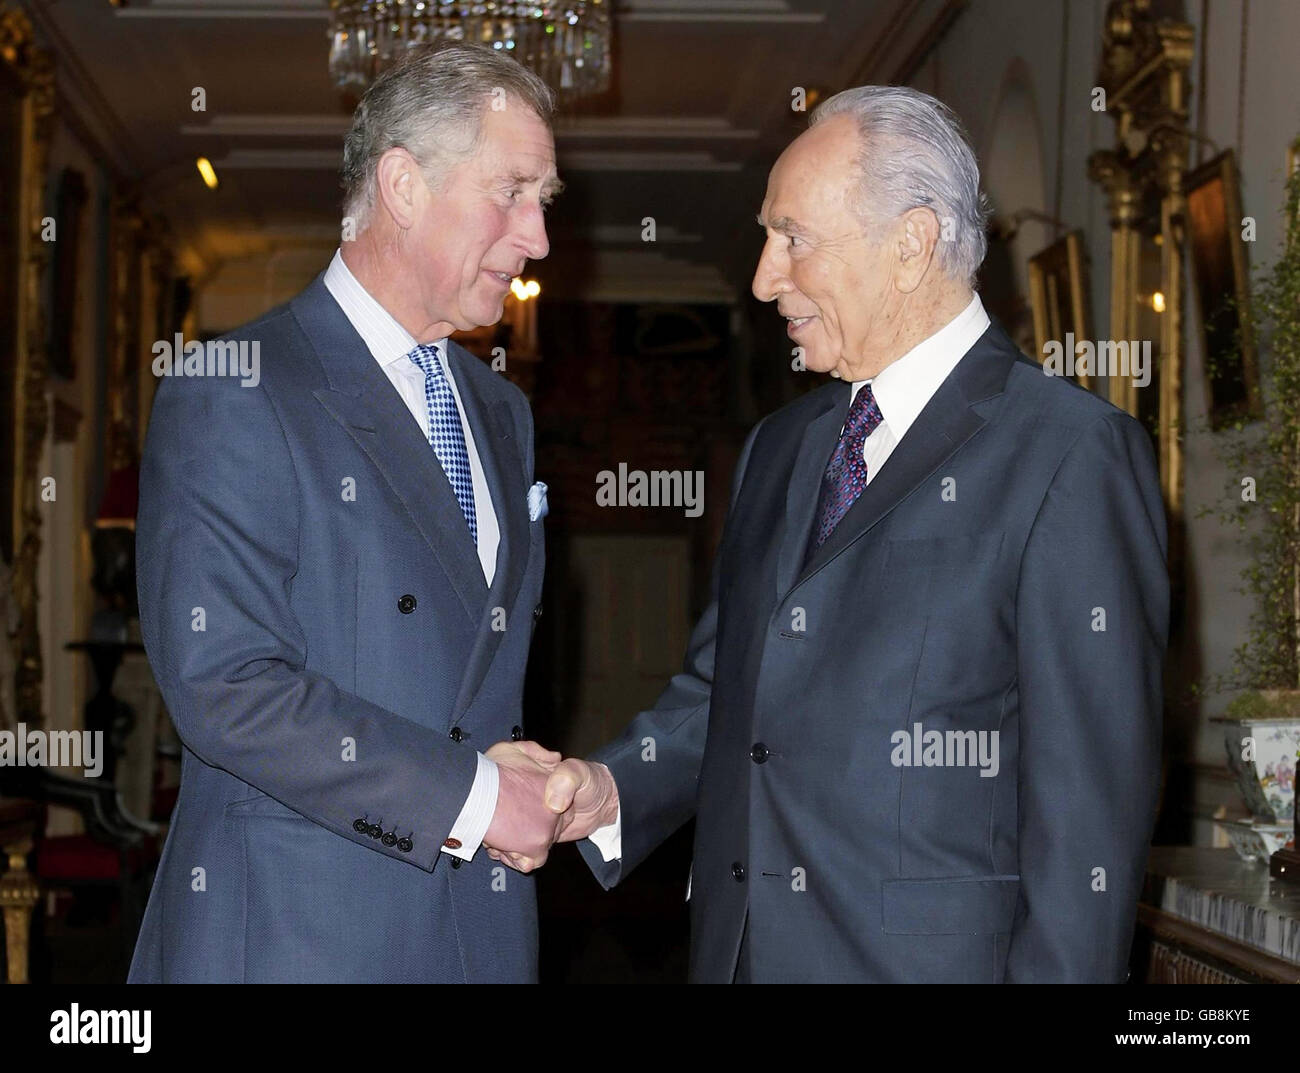 Le Prince de Galles (à gauche) rencontre le Président d'Israël Shimon Peres à Clarence House, Londres. Banque D'Images